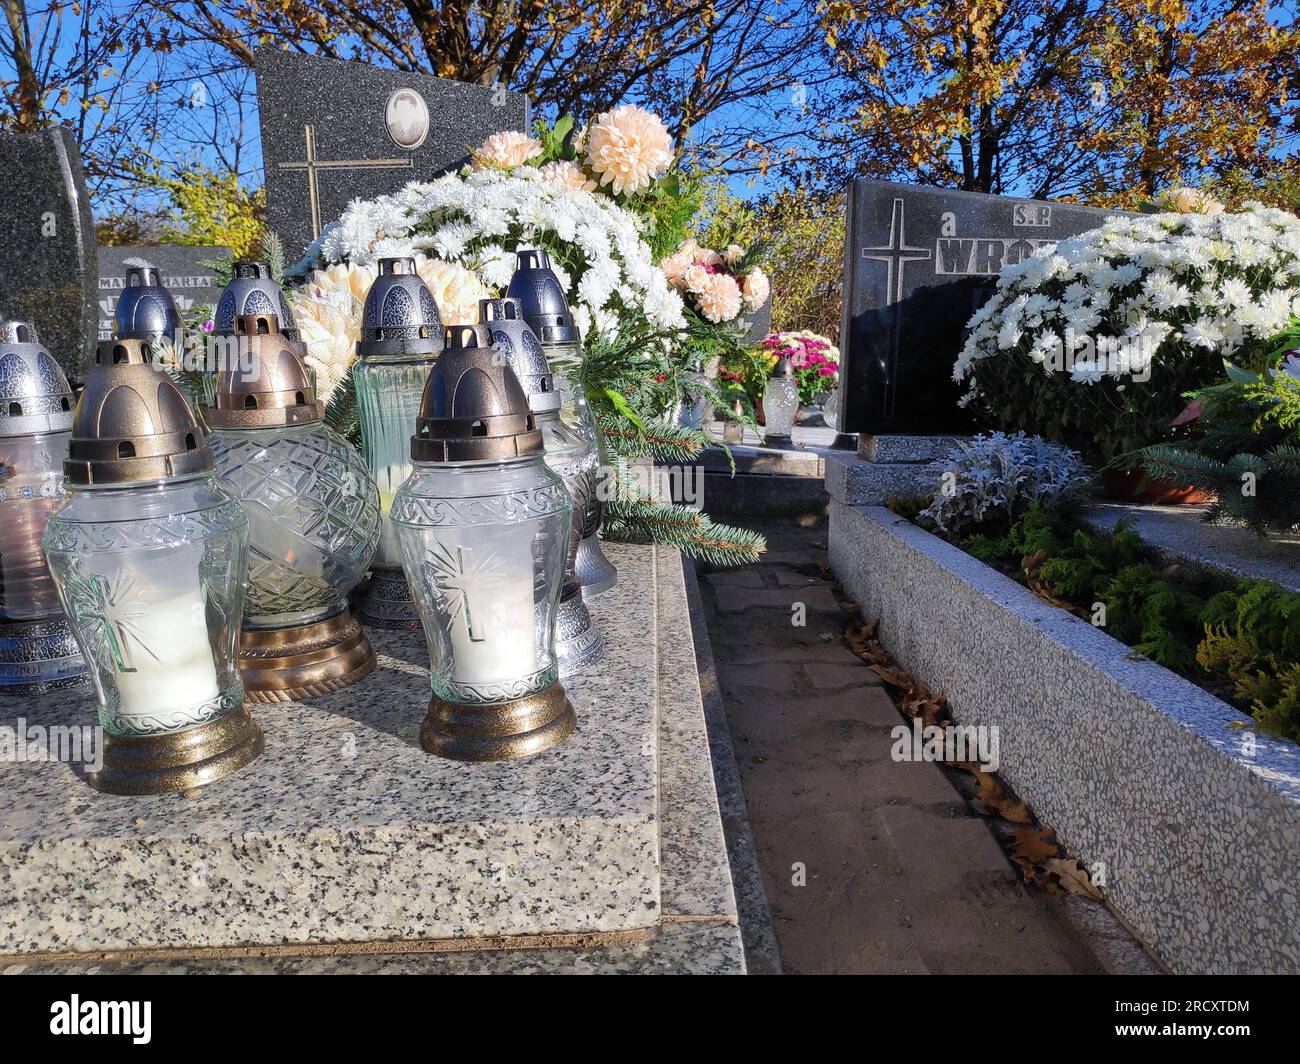 BYTOM, POLEN - 1. NOVEMBER 2021: Kerzen leuchten auf den Gräbern auf einem Friedhof am Allerheiligen-Tag (Wszystkich Swietych) in Polen. Stockfoto